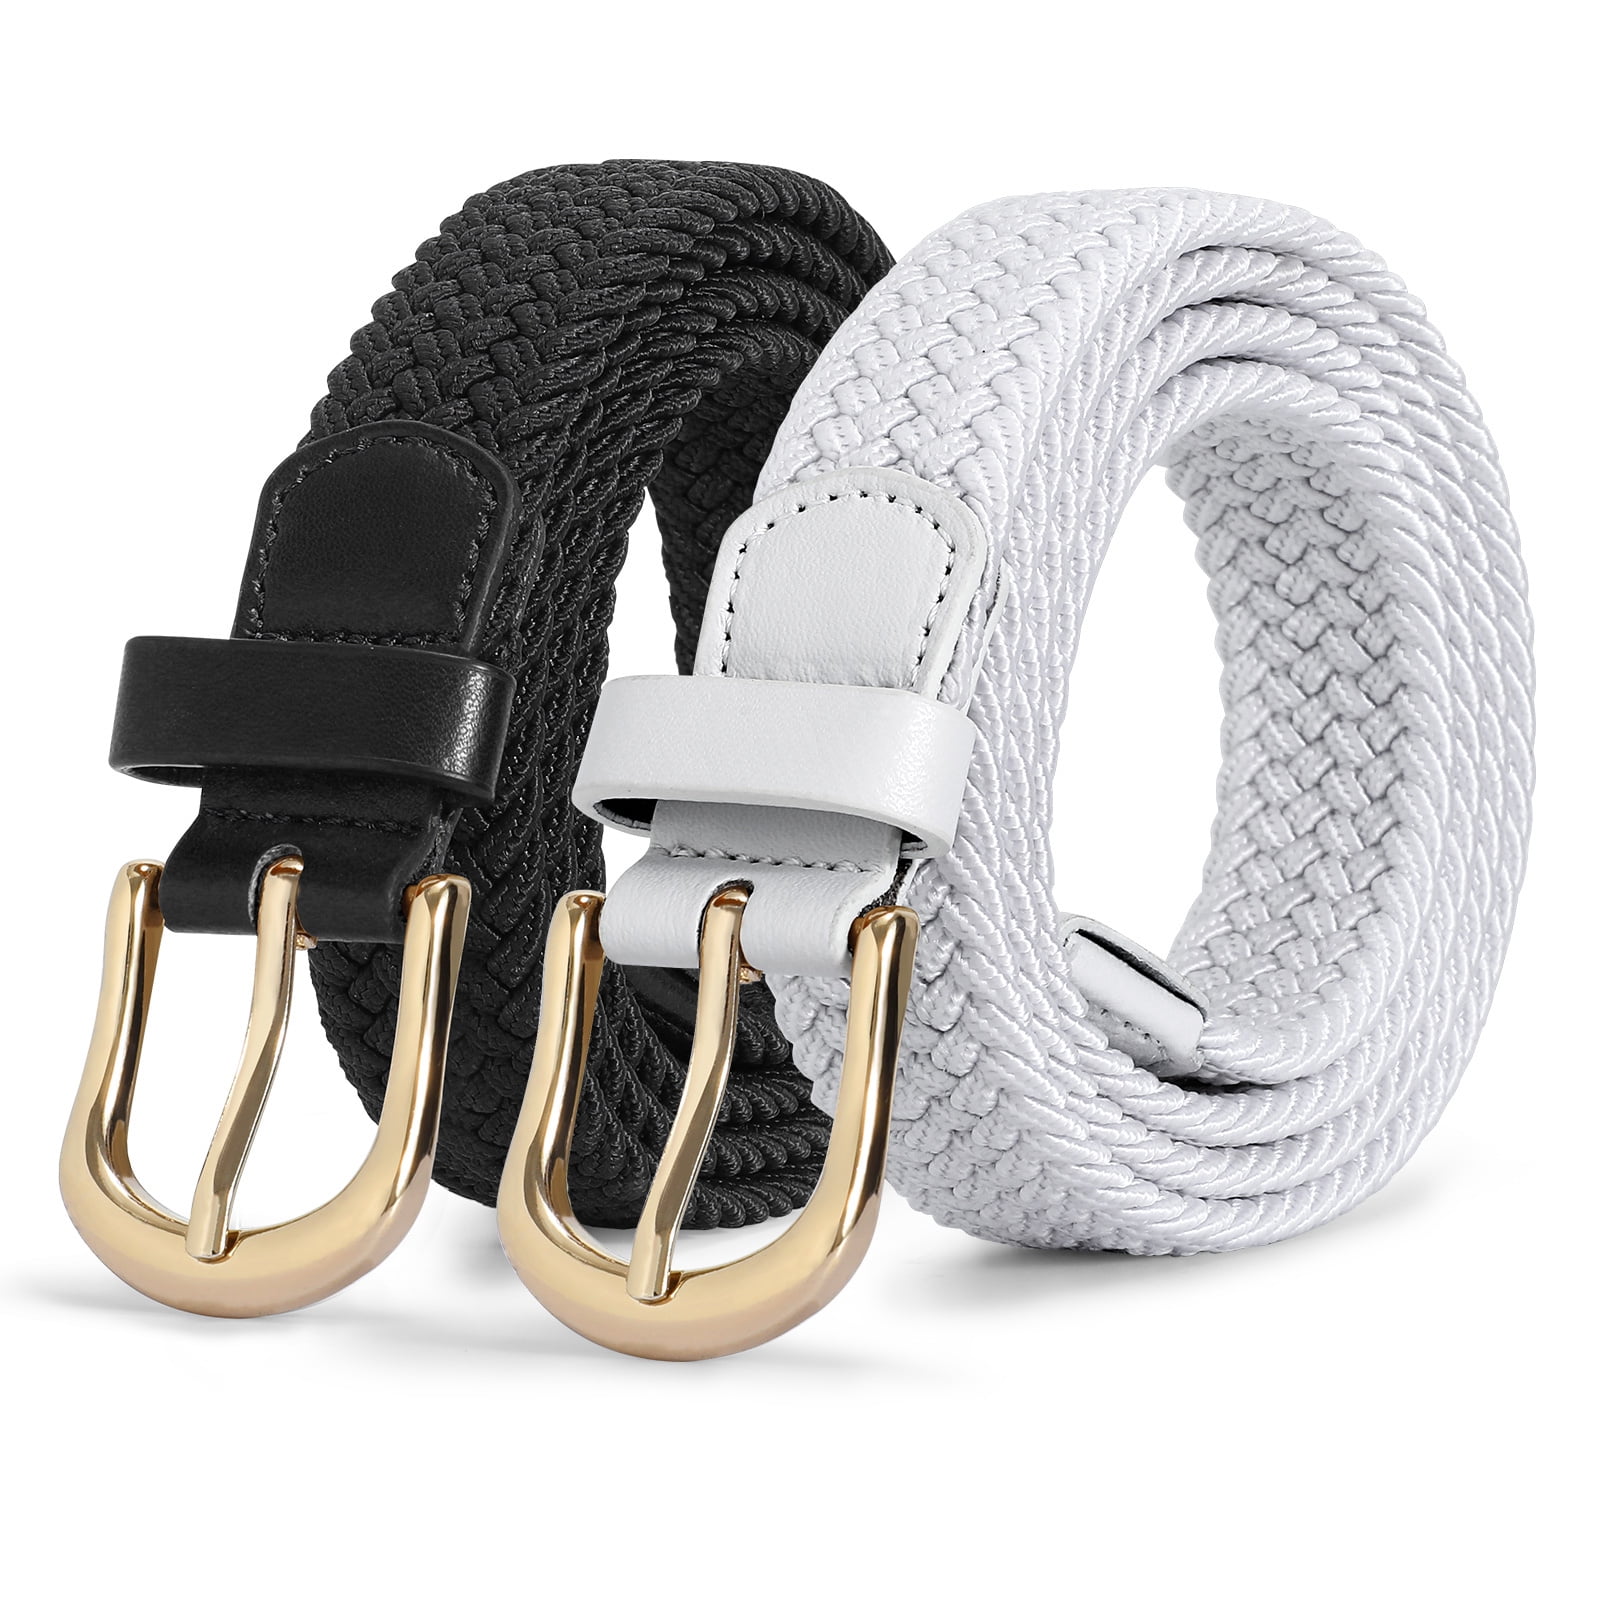 WHIPPY Elastic Braided Woven Belts for Men Women, Nylon Stretch Belt ...